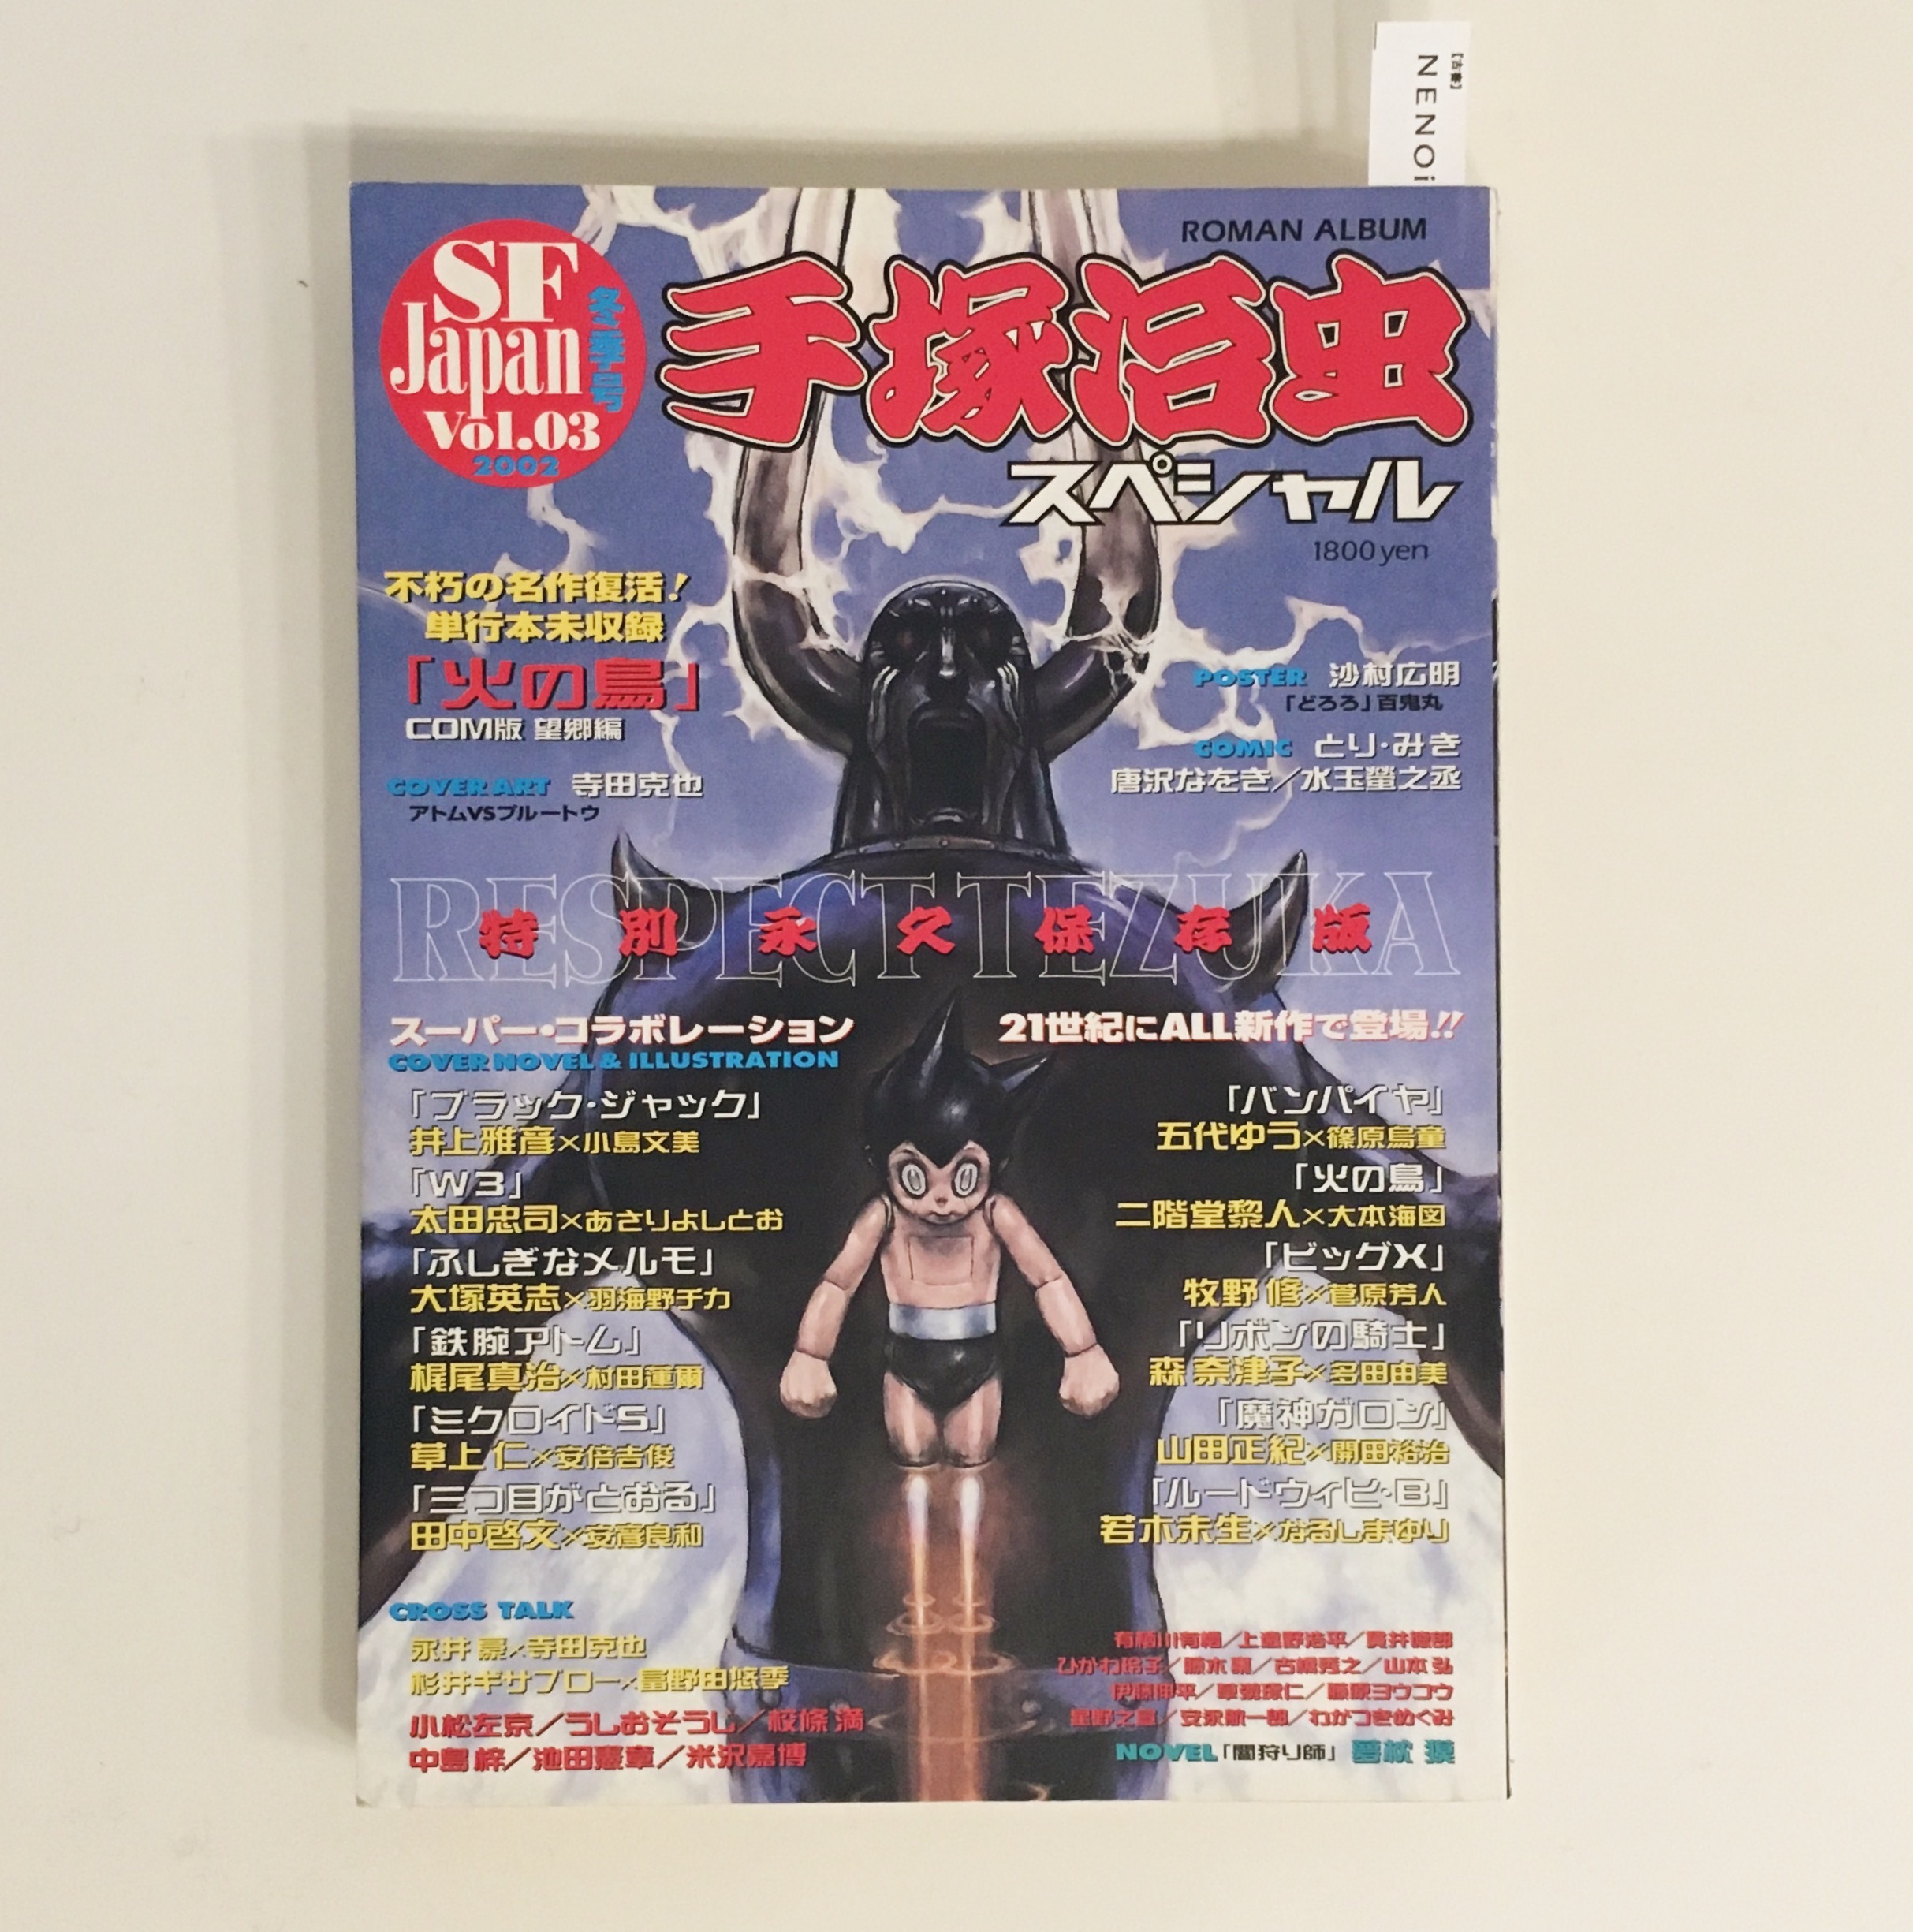 古書 Sf Japan Vol 3 手塚治虫スペシャル Nenoi